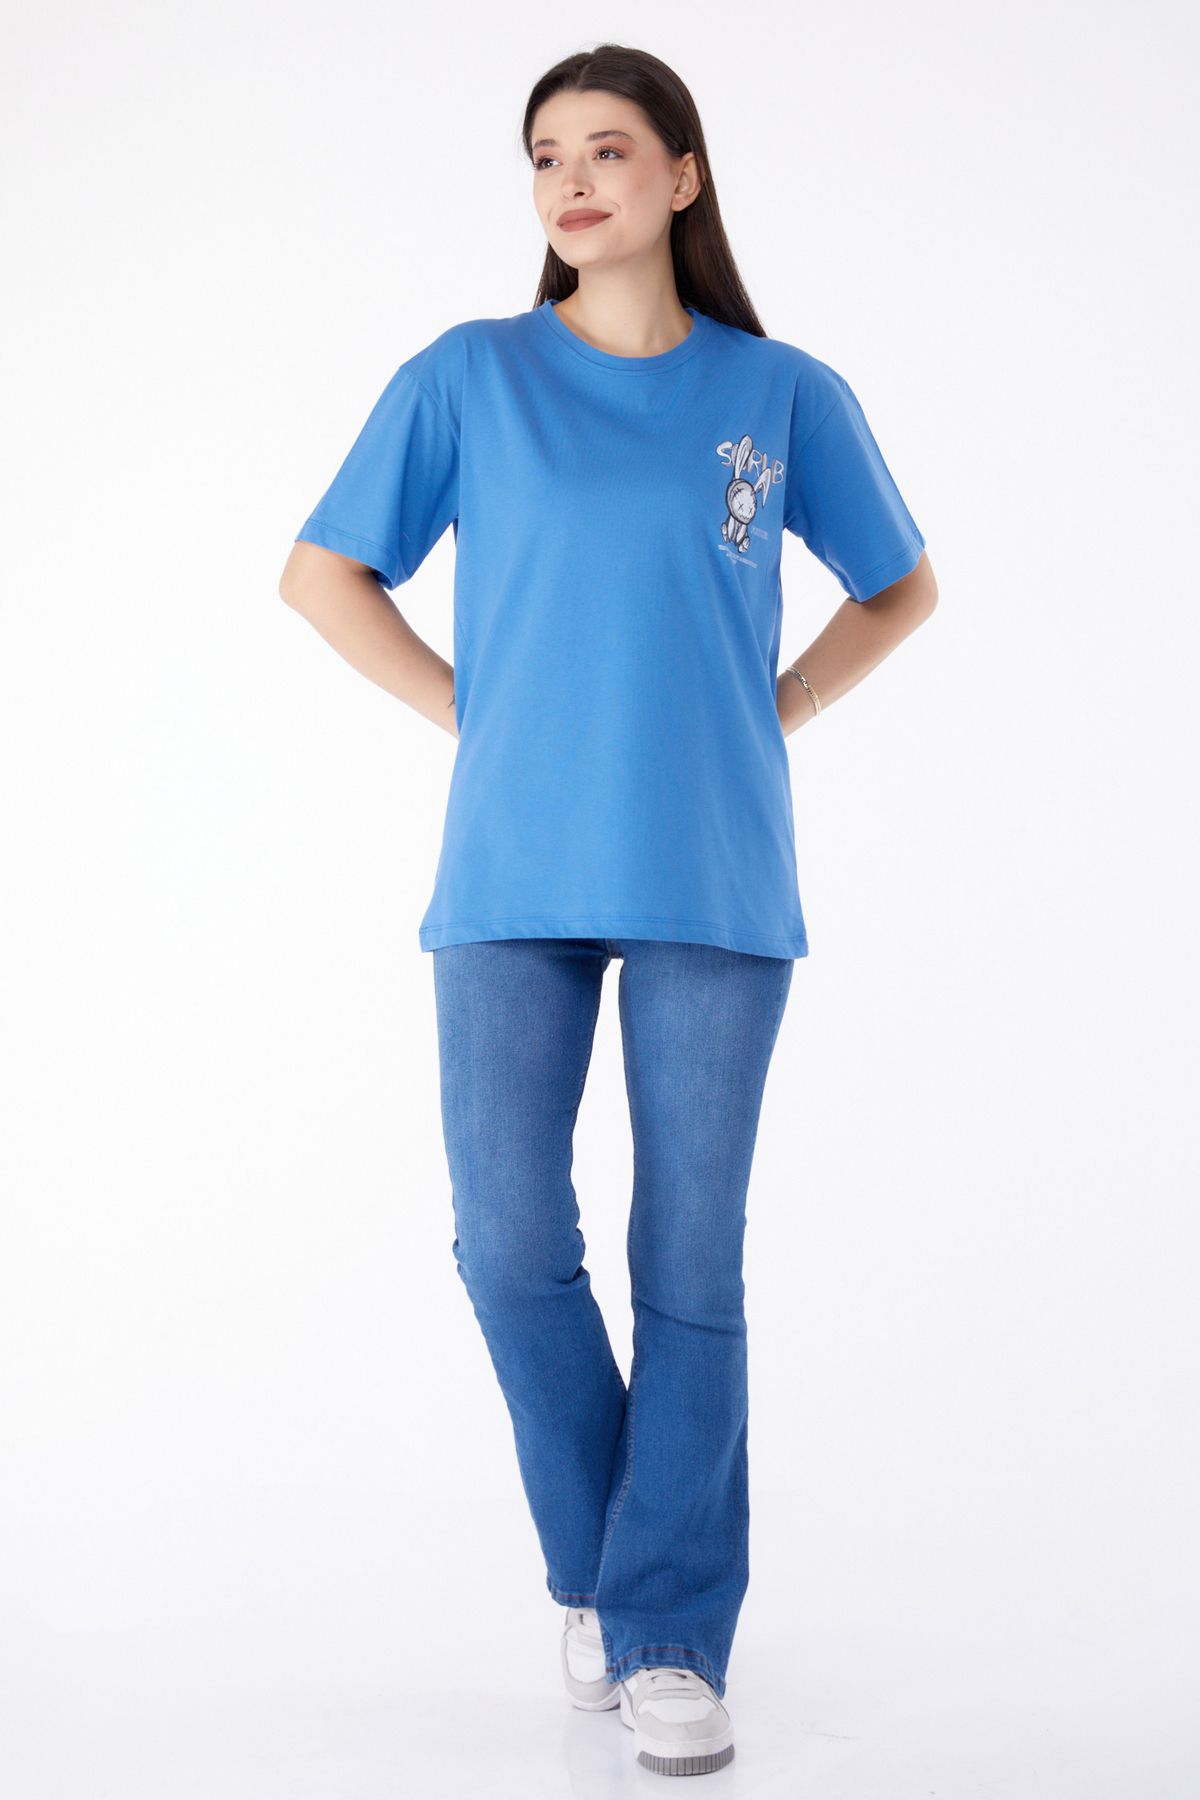 TOFİSA Düz Bisiklet Yaka Kadın Mavi Baskılı T-shirt - 25288